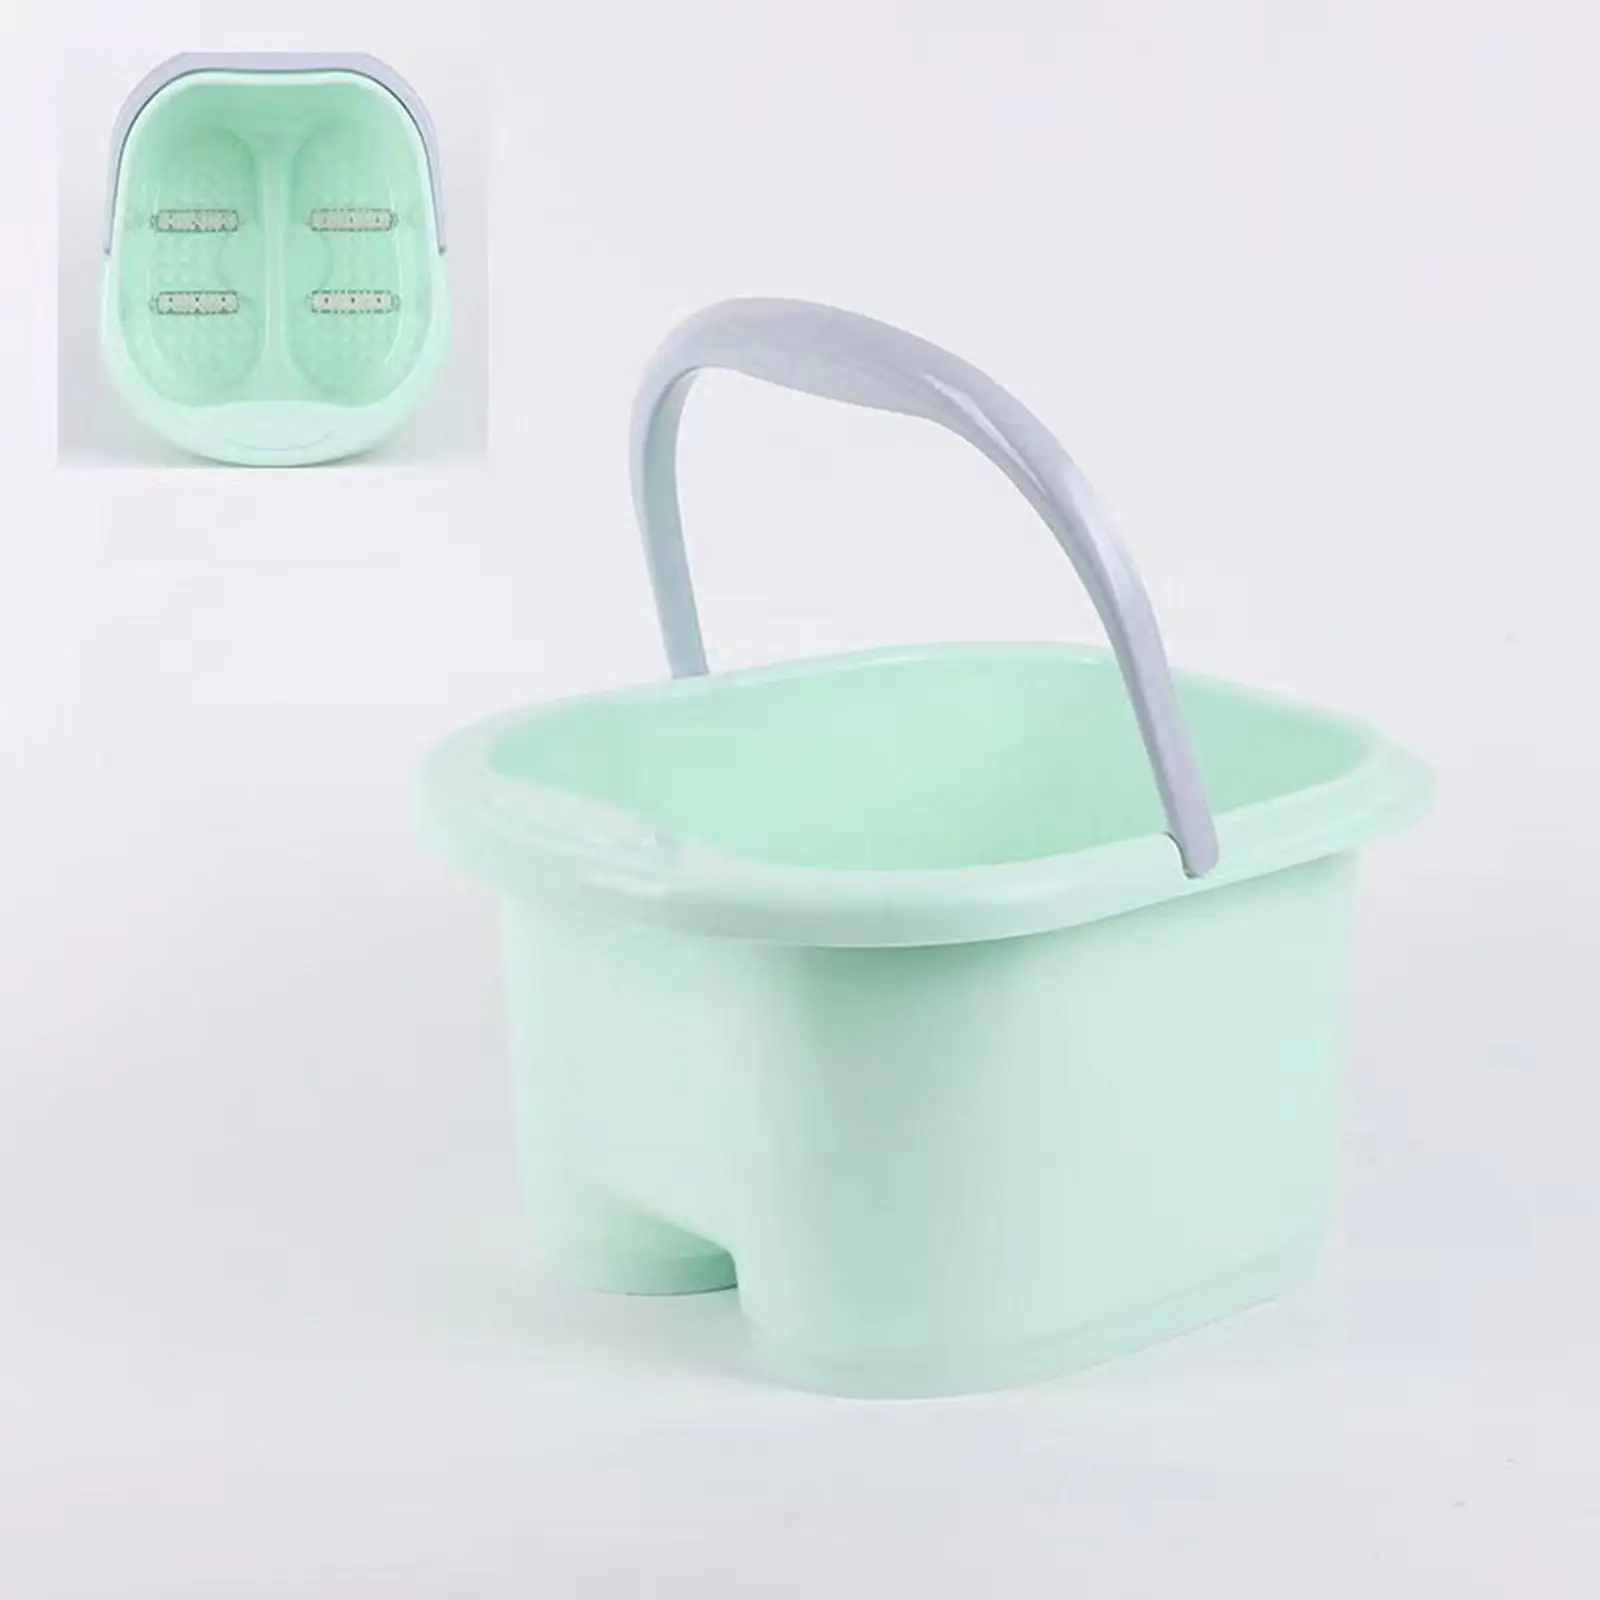 Foot Bath Basin, Foot Bath Bucket Large with Handle, Foot Massage Foot Soaking Tub, Foot Bath Soak Tub for Soaking Feet